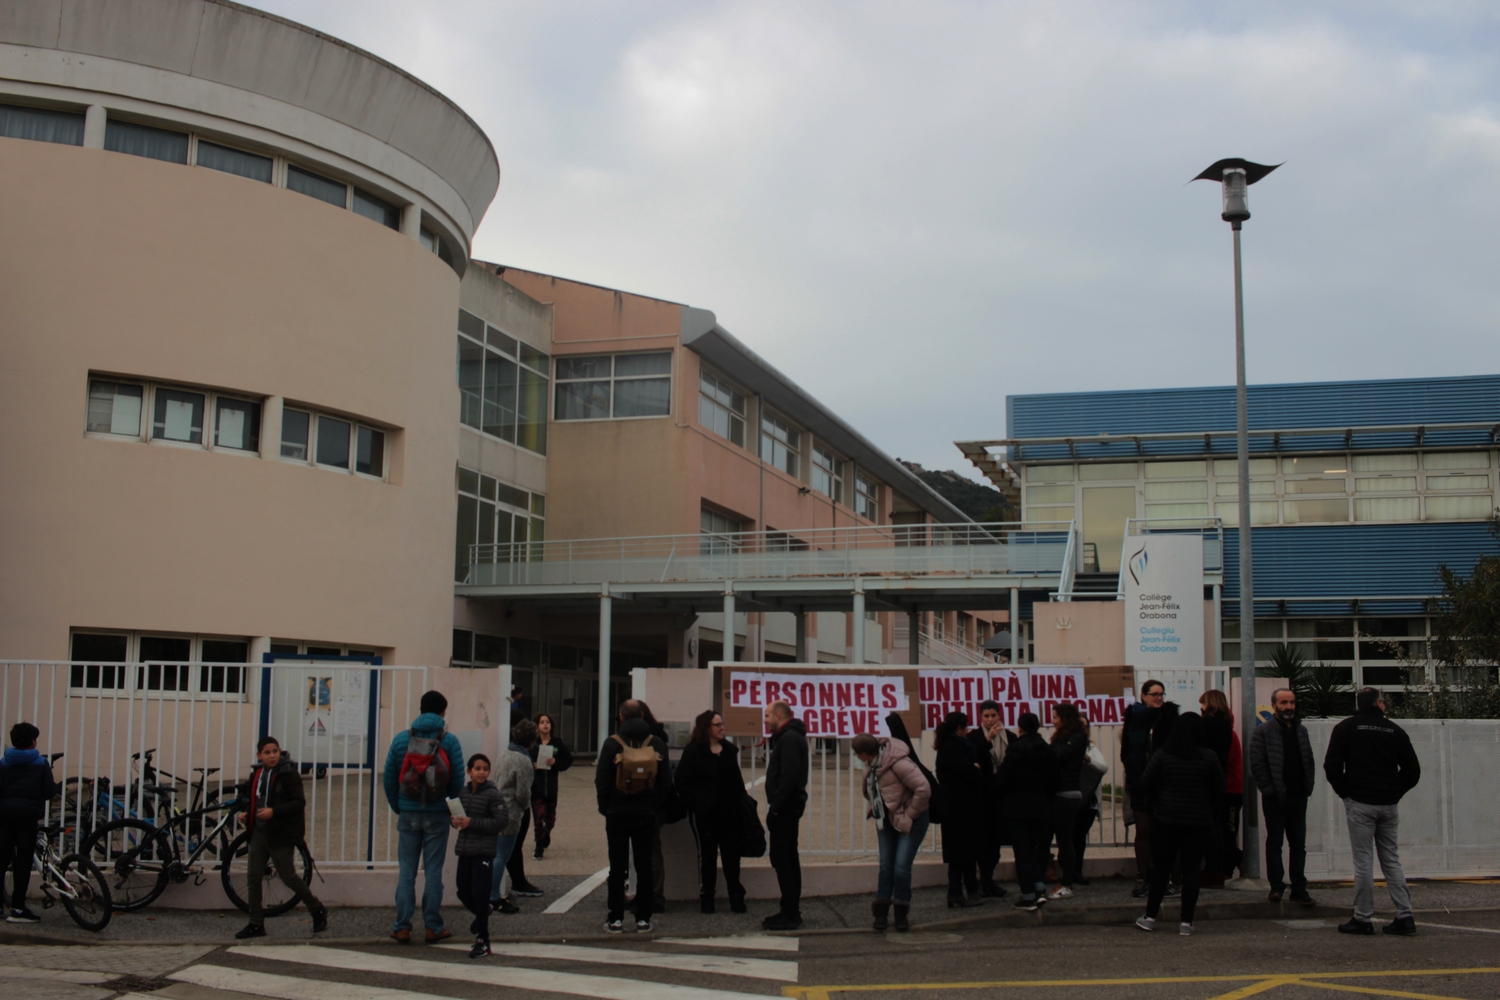 Grève : rassemblement devant le collège de Calvi